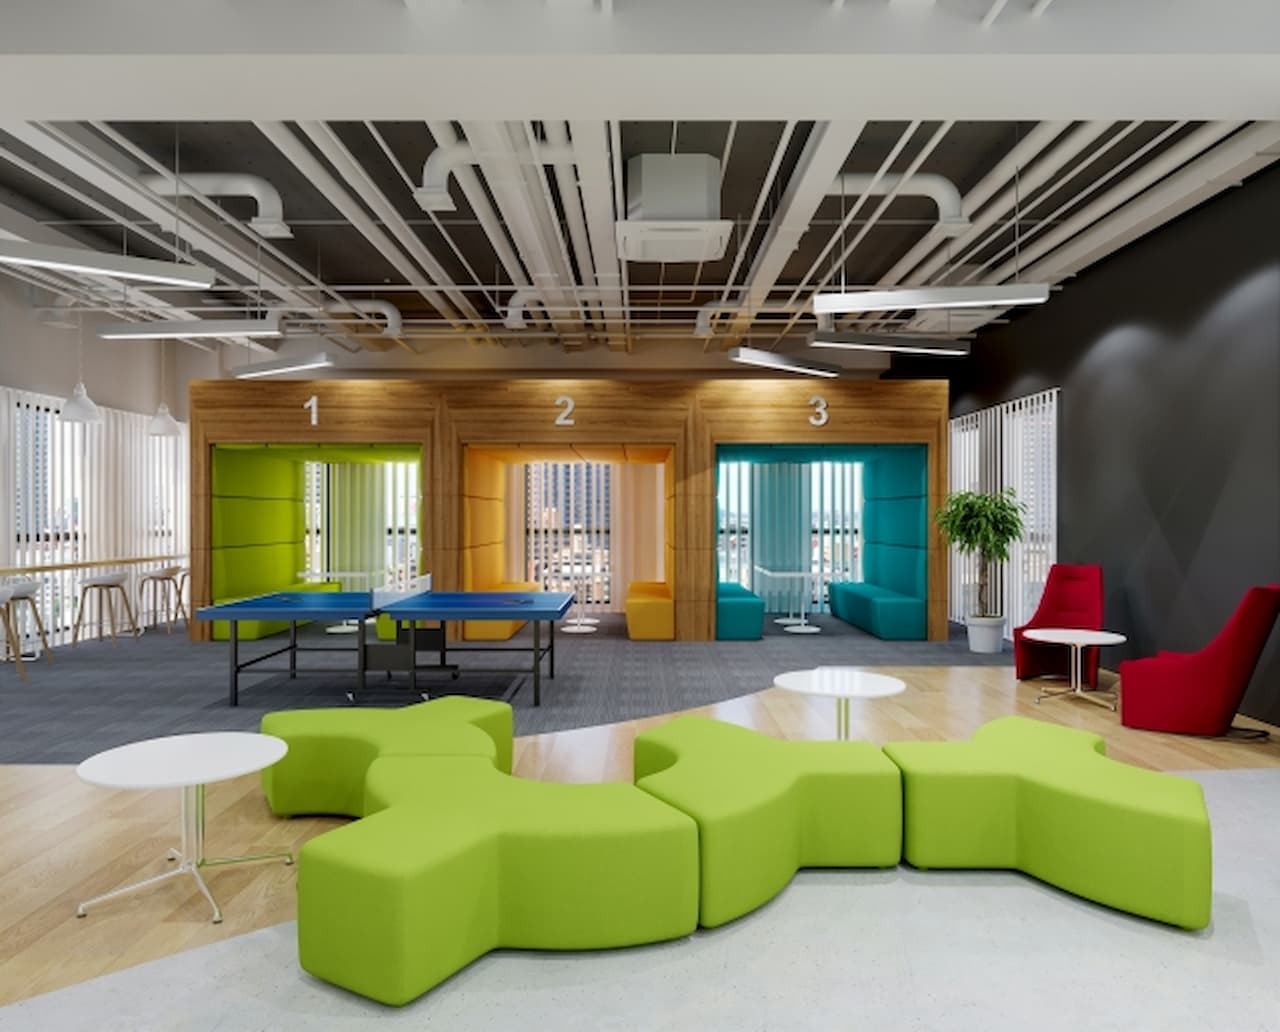 オフィス空間づくりのポイント5つとおしゃれなデザイン事例